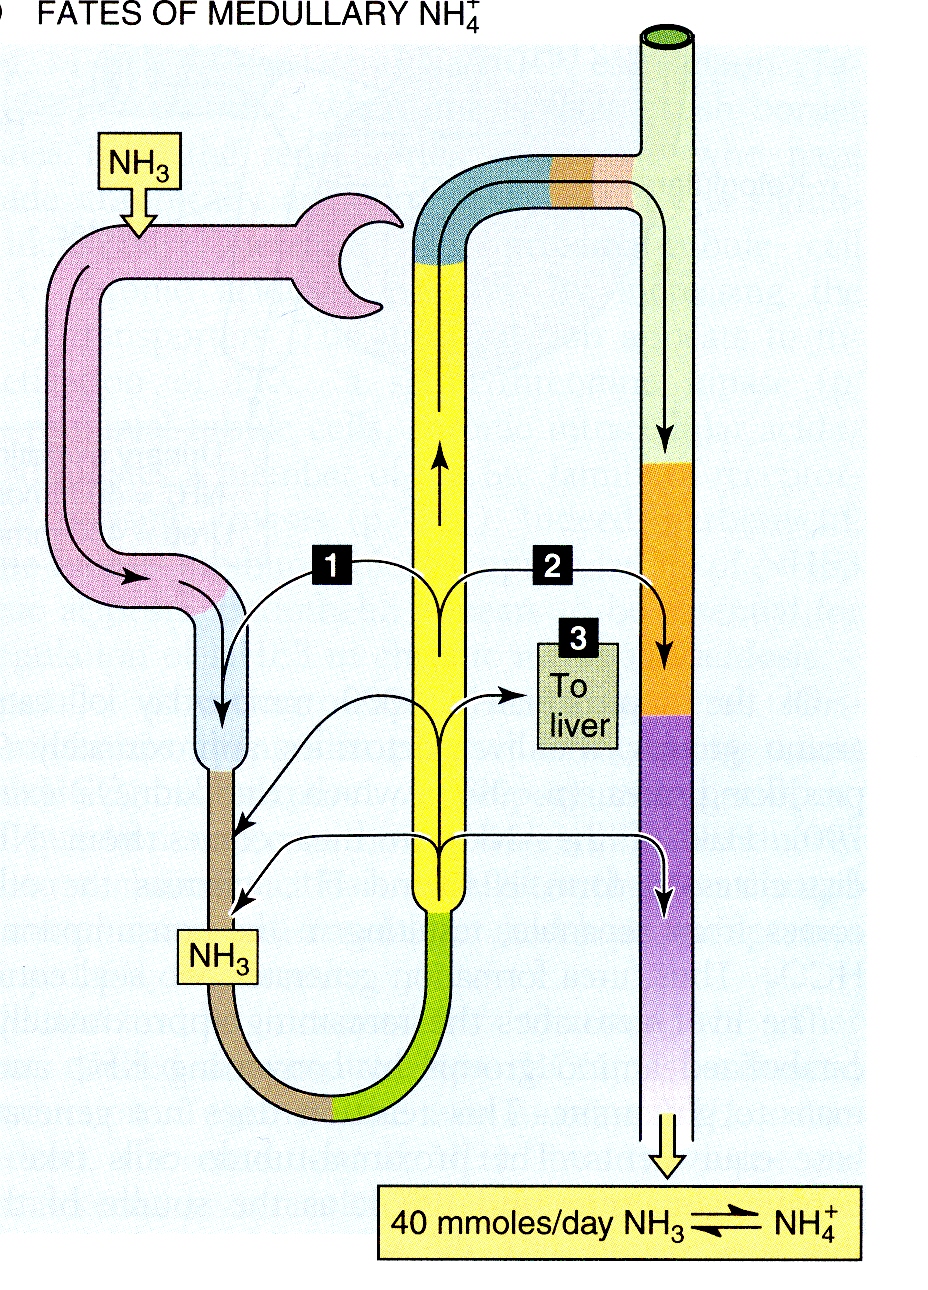 Ricircolo di NH + 4 nell ansa di Henle NH 4 + riassorbito da ansa è convertito a H + e NH 3 nell interstizio 1) NH 3 diffonde nel